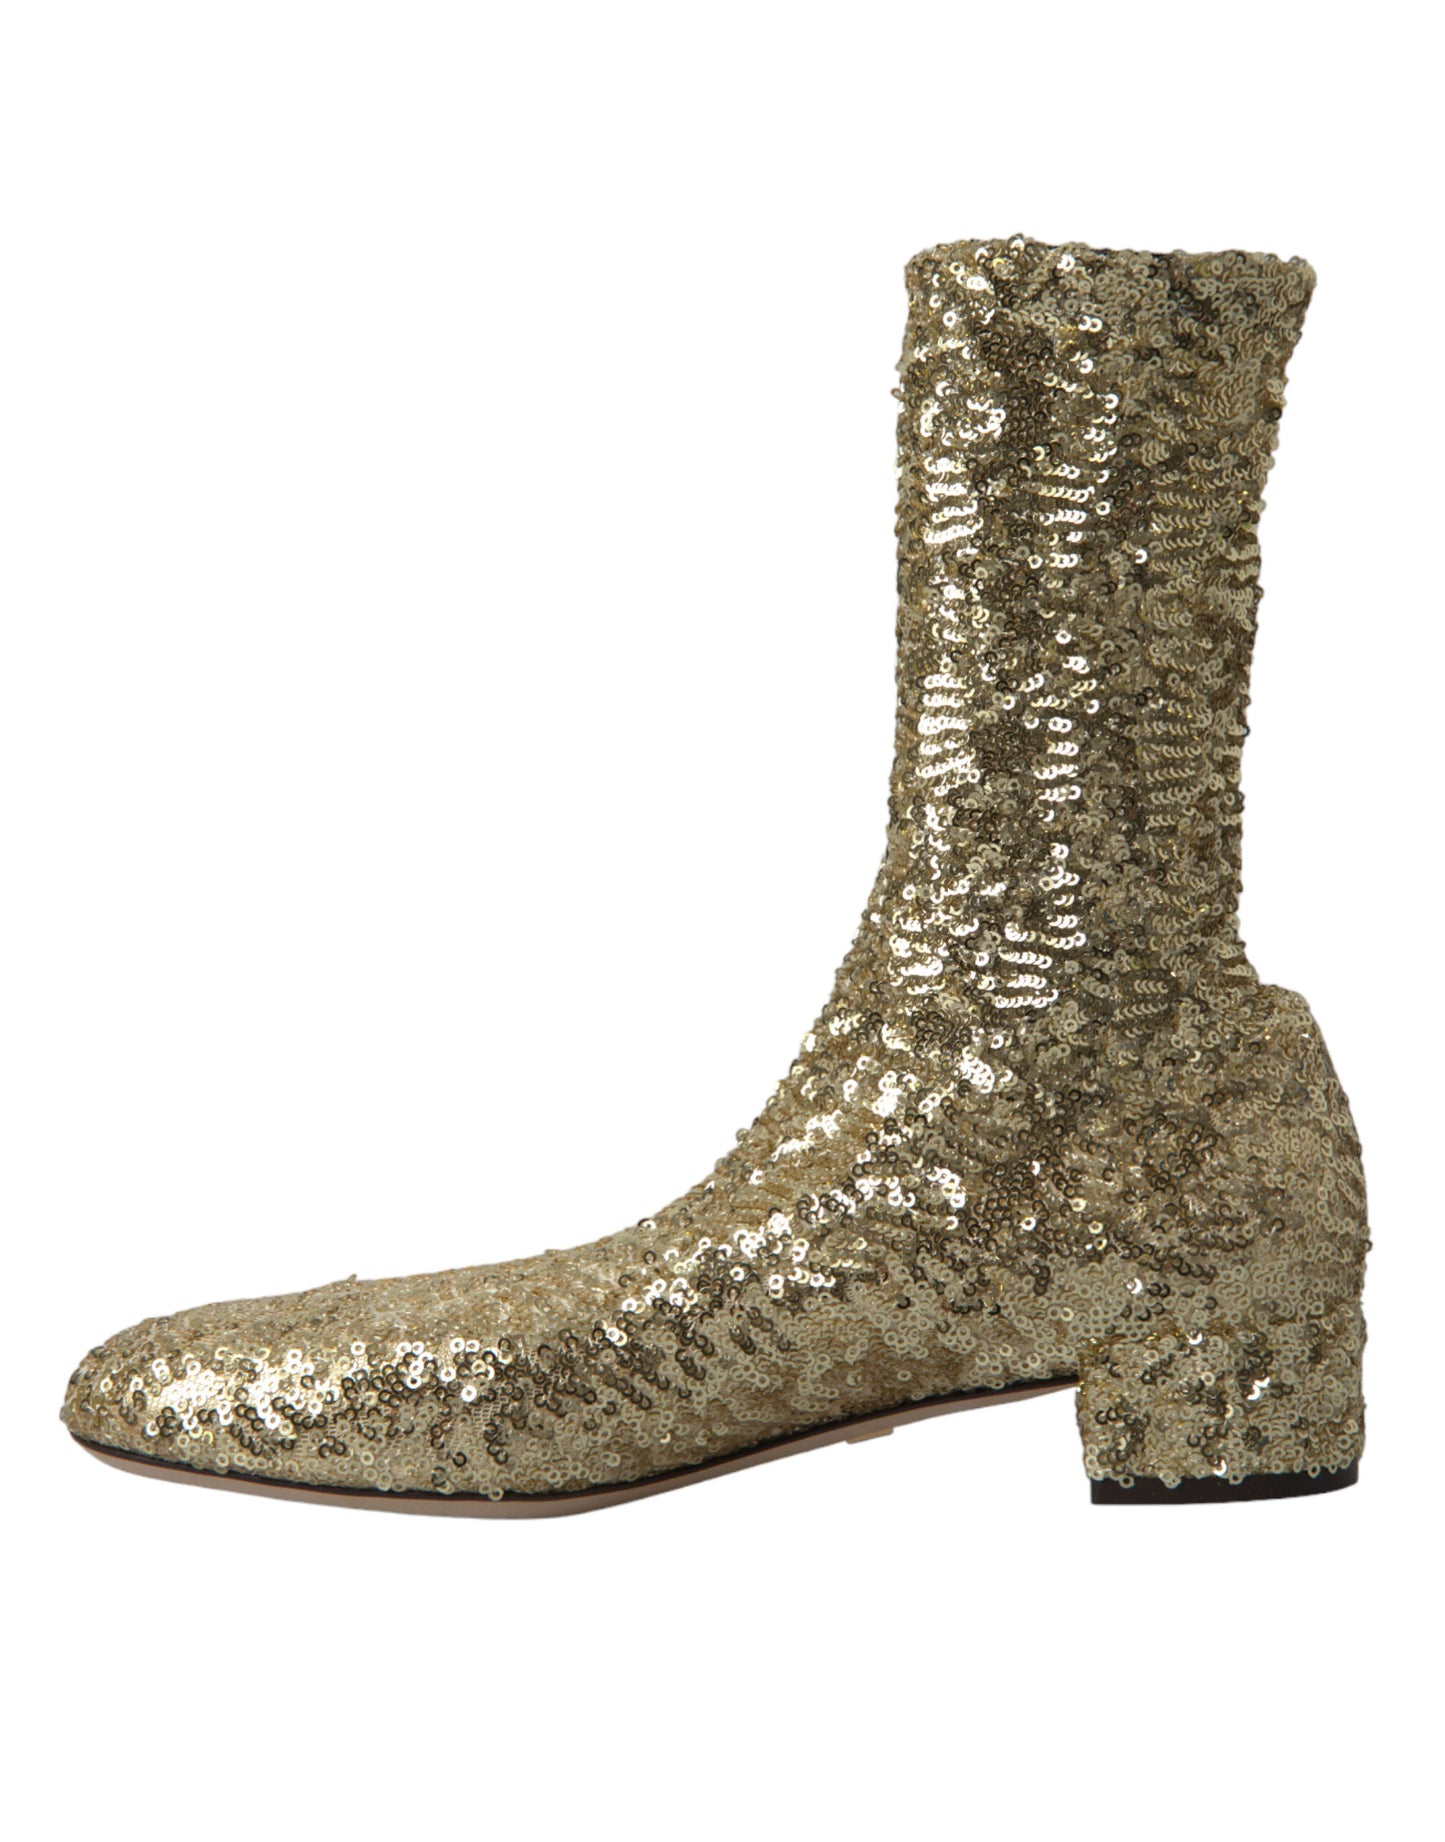 Elegant Mid Calf Gold Boots Exclusive Design